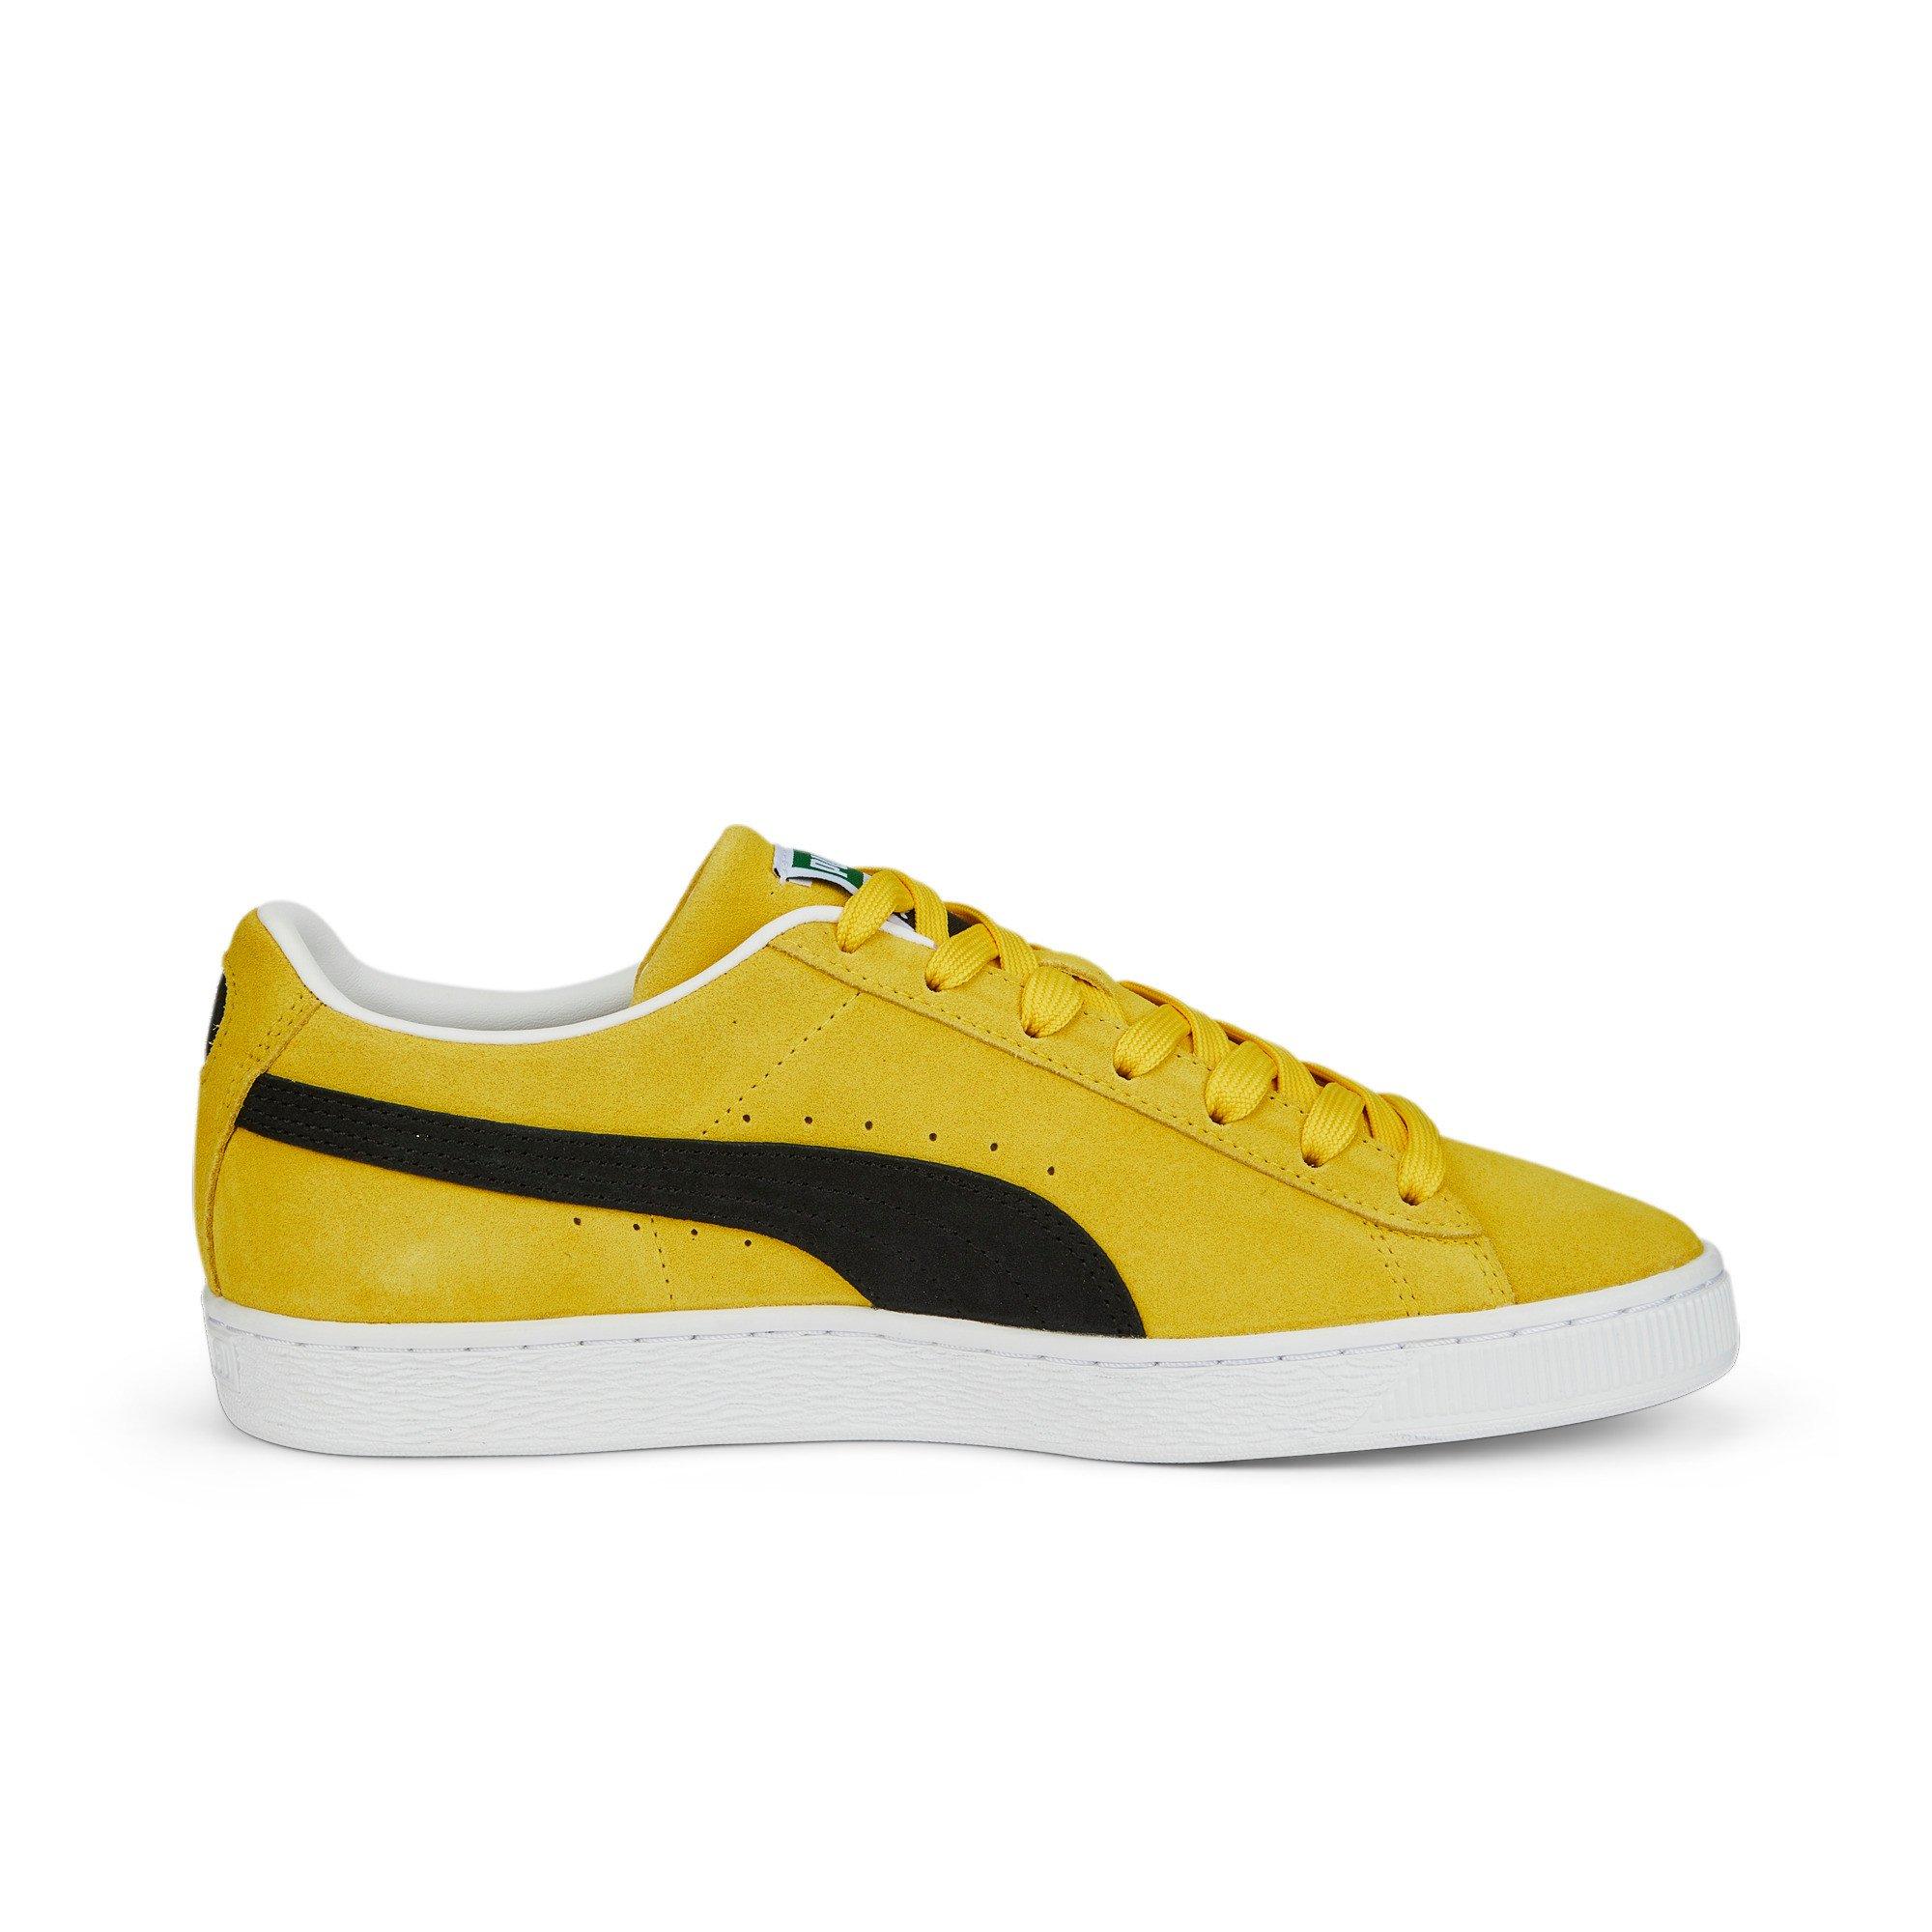 PUMA Suede Classic XXI "Yellow/Black/White" Shoe - | City Gear